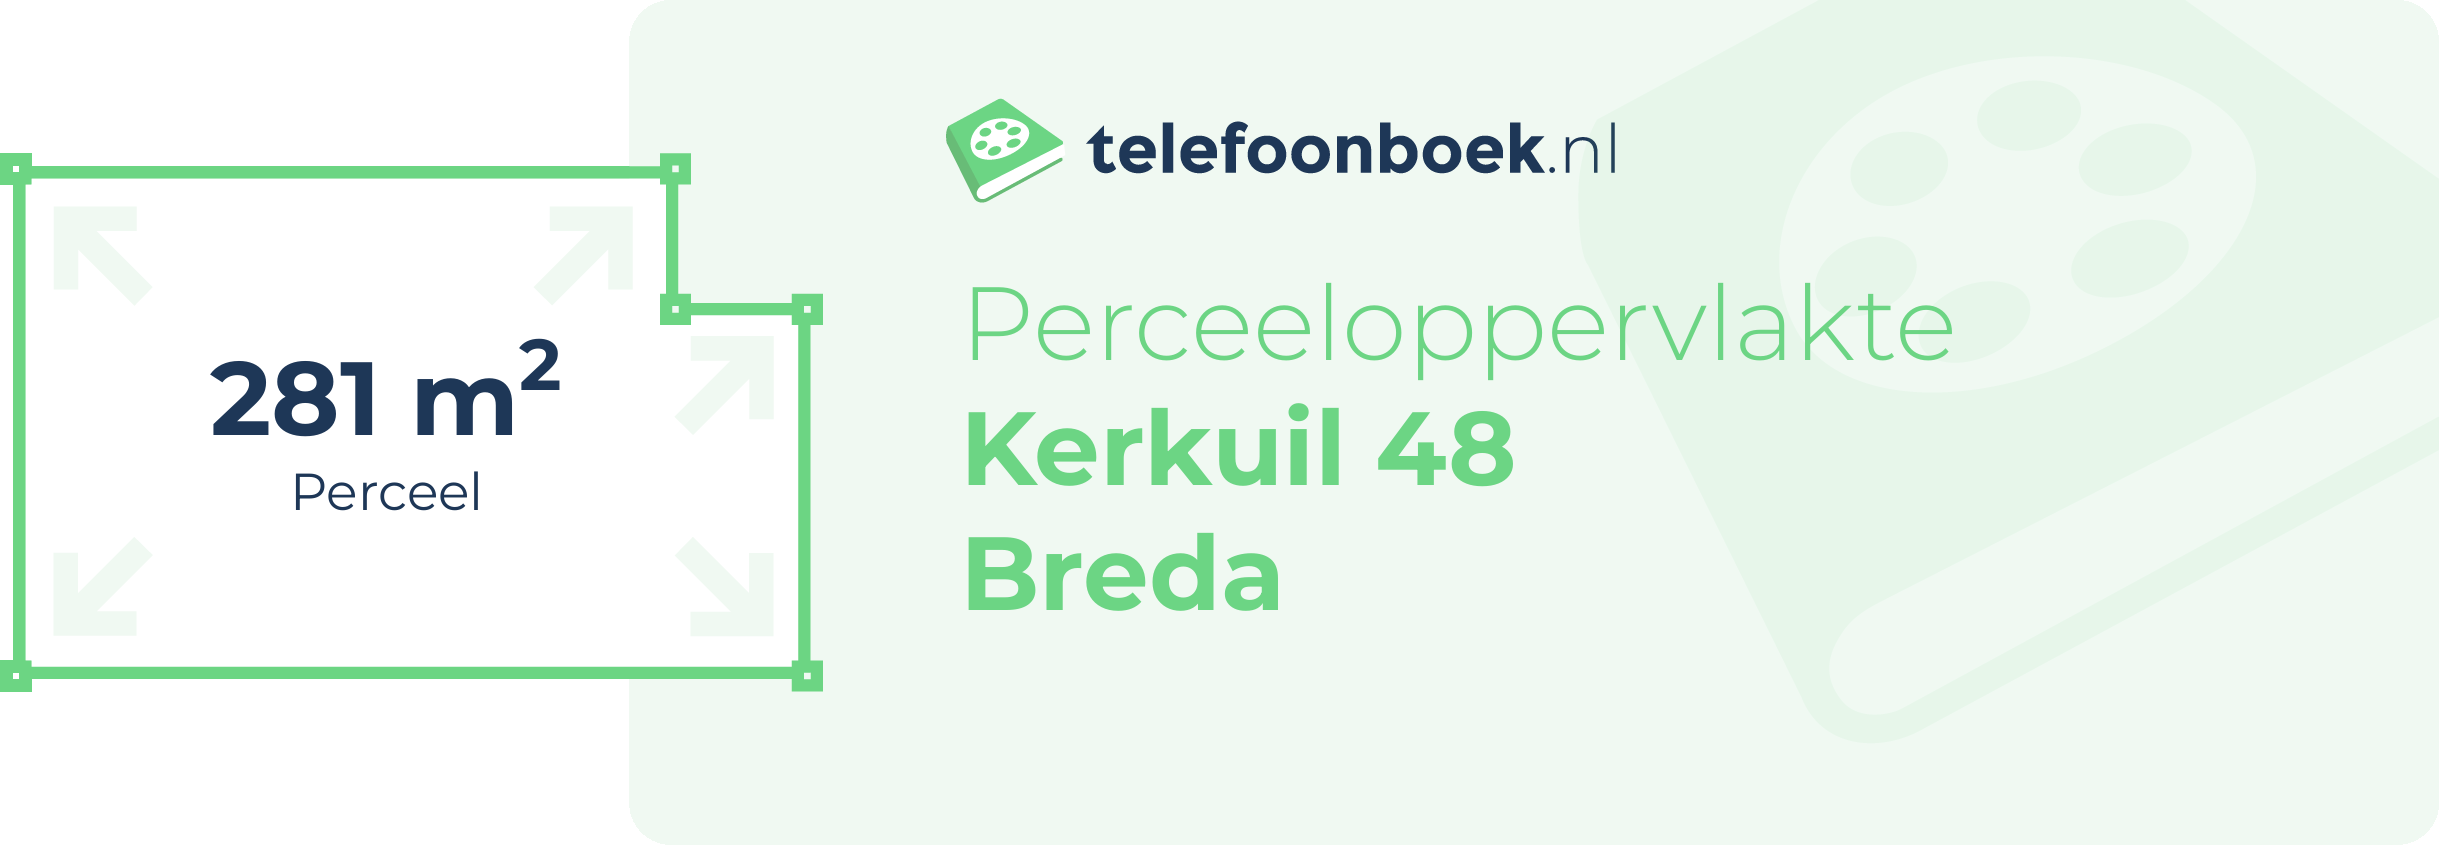 Perceeloppervlakte Kerkuil 48 Breda